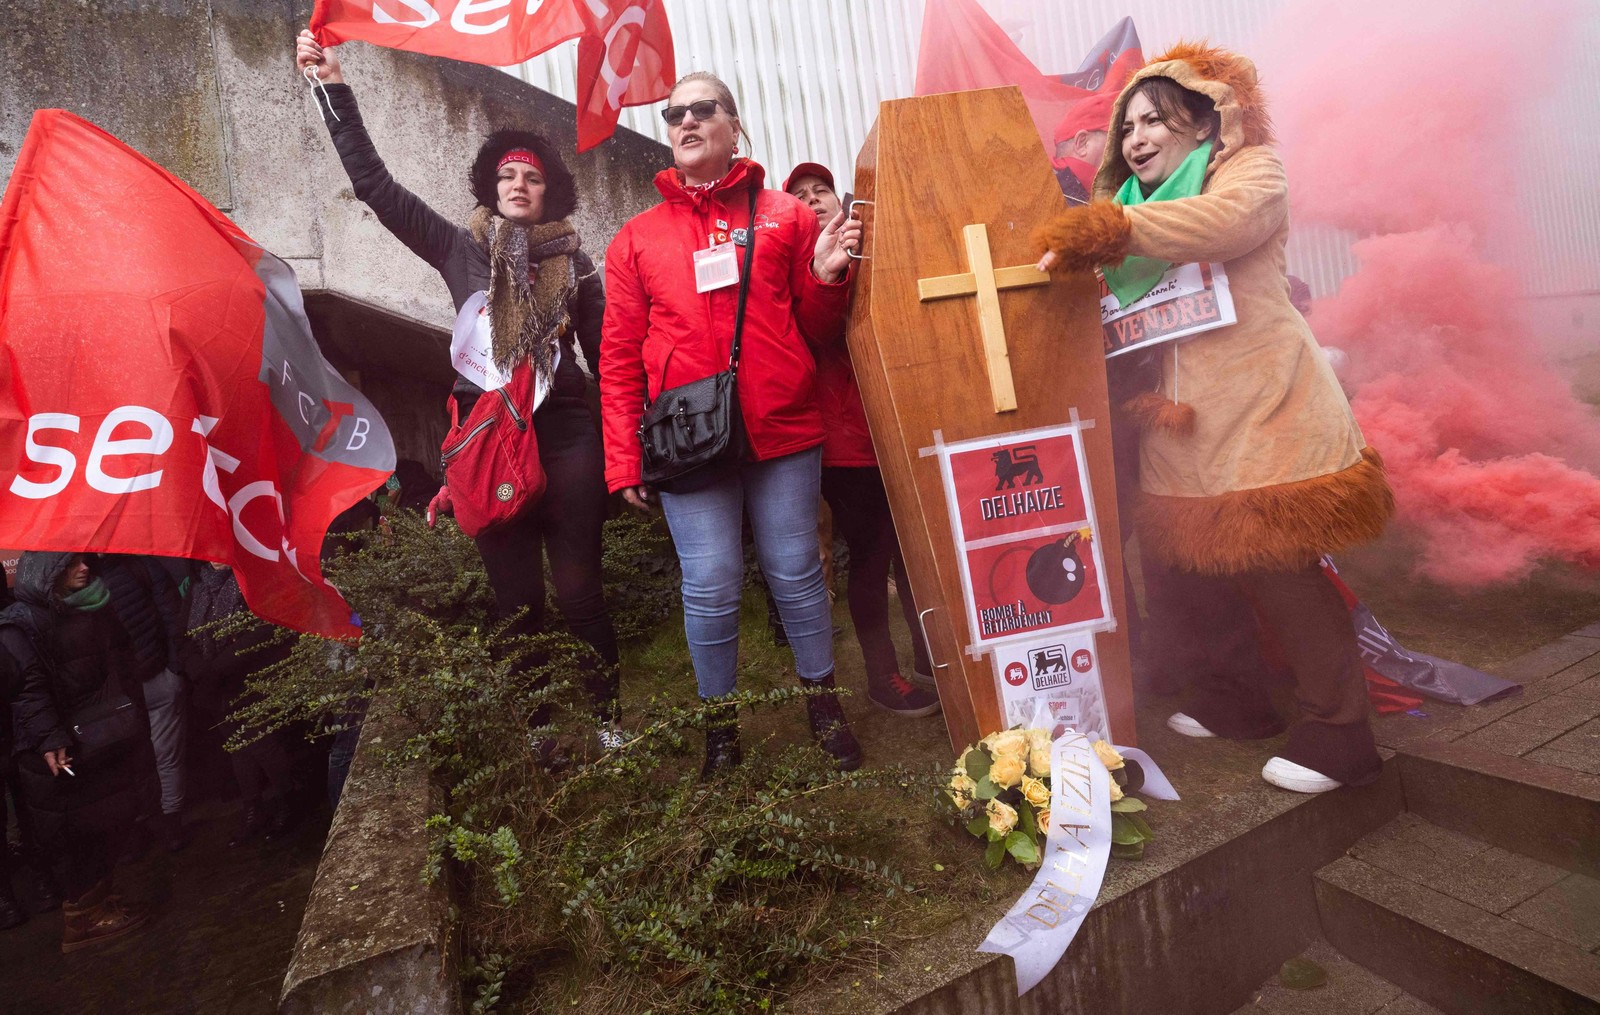 Trabalhadores protestam durante reunião sindicatos e direção da rede de supermercados Delhaize, em Zellik, Bélgica — Foto: BENOIT DOPPAGNE/AFP